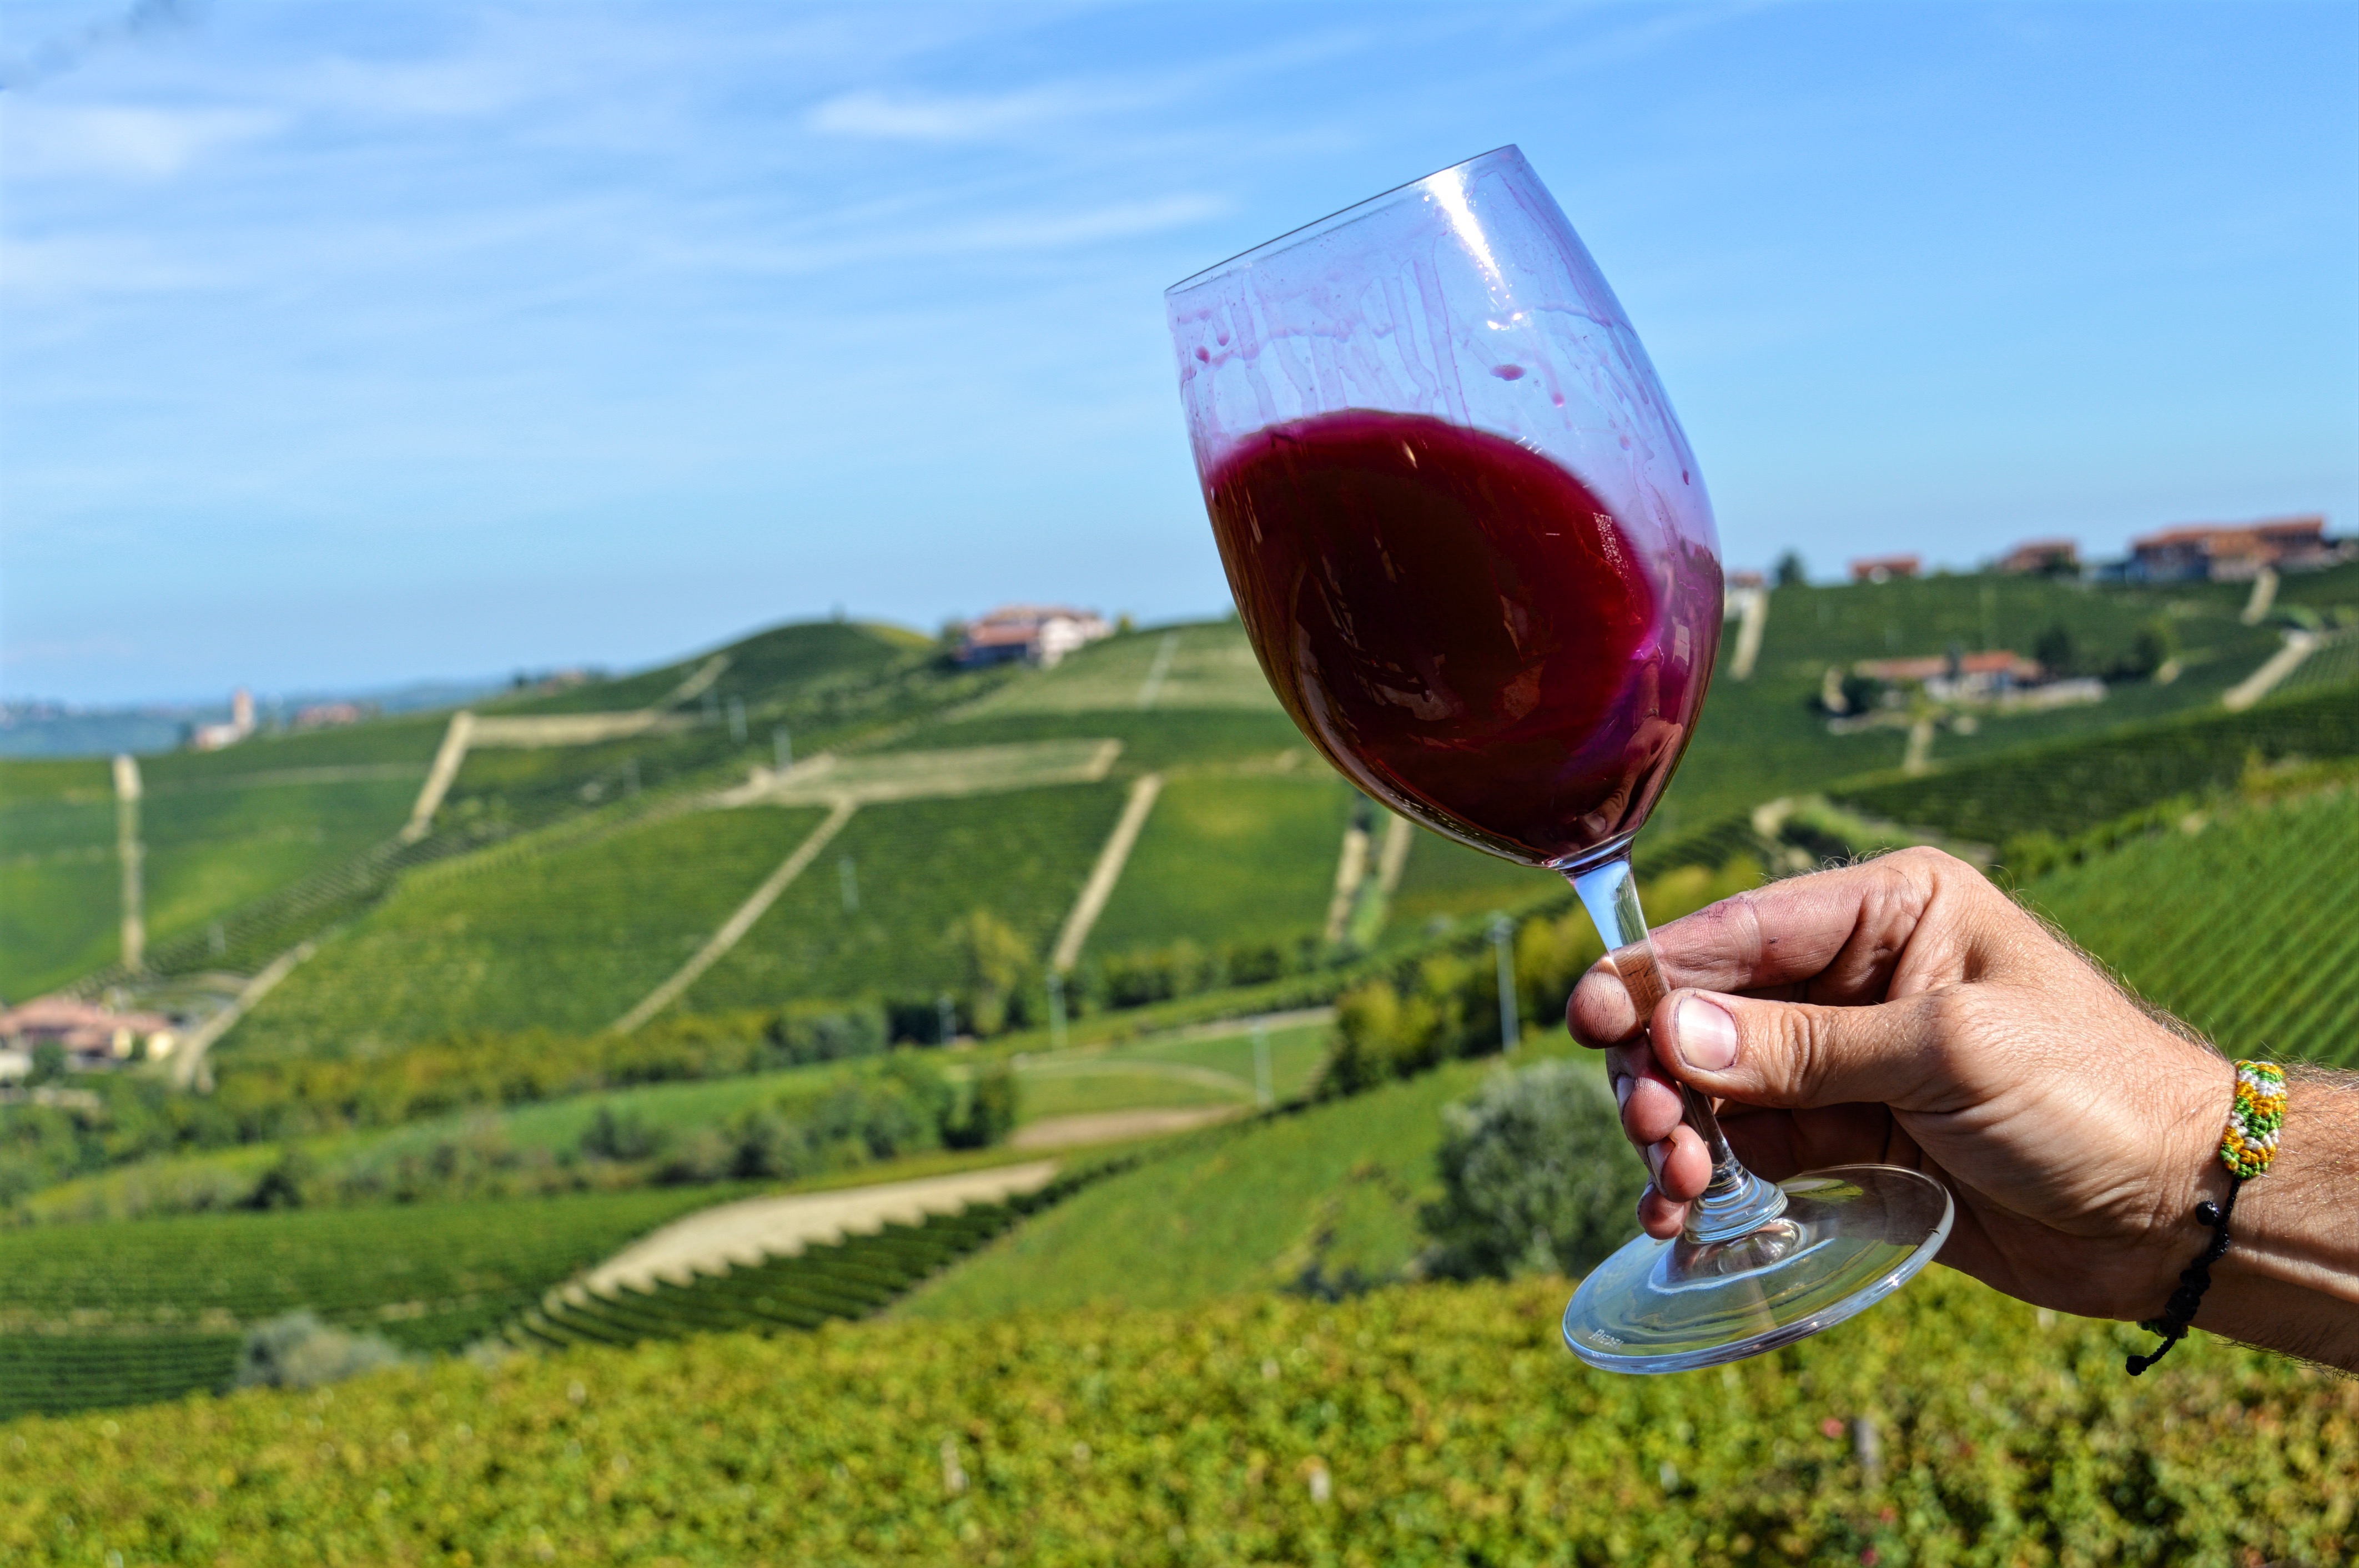 Поен вино. Пьемонт вина Италии. Piemont, Италия винодельня. Итальянское красное вино Пьемонте. Винодельни Тосканы.